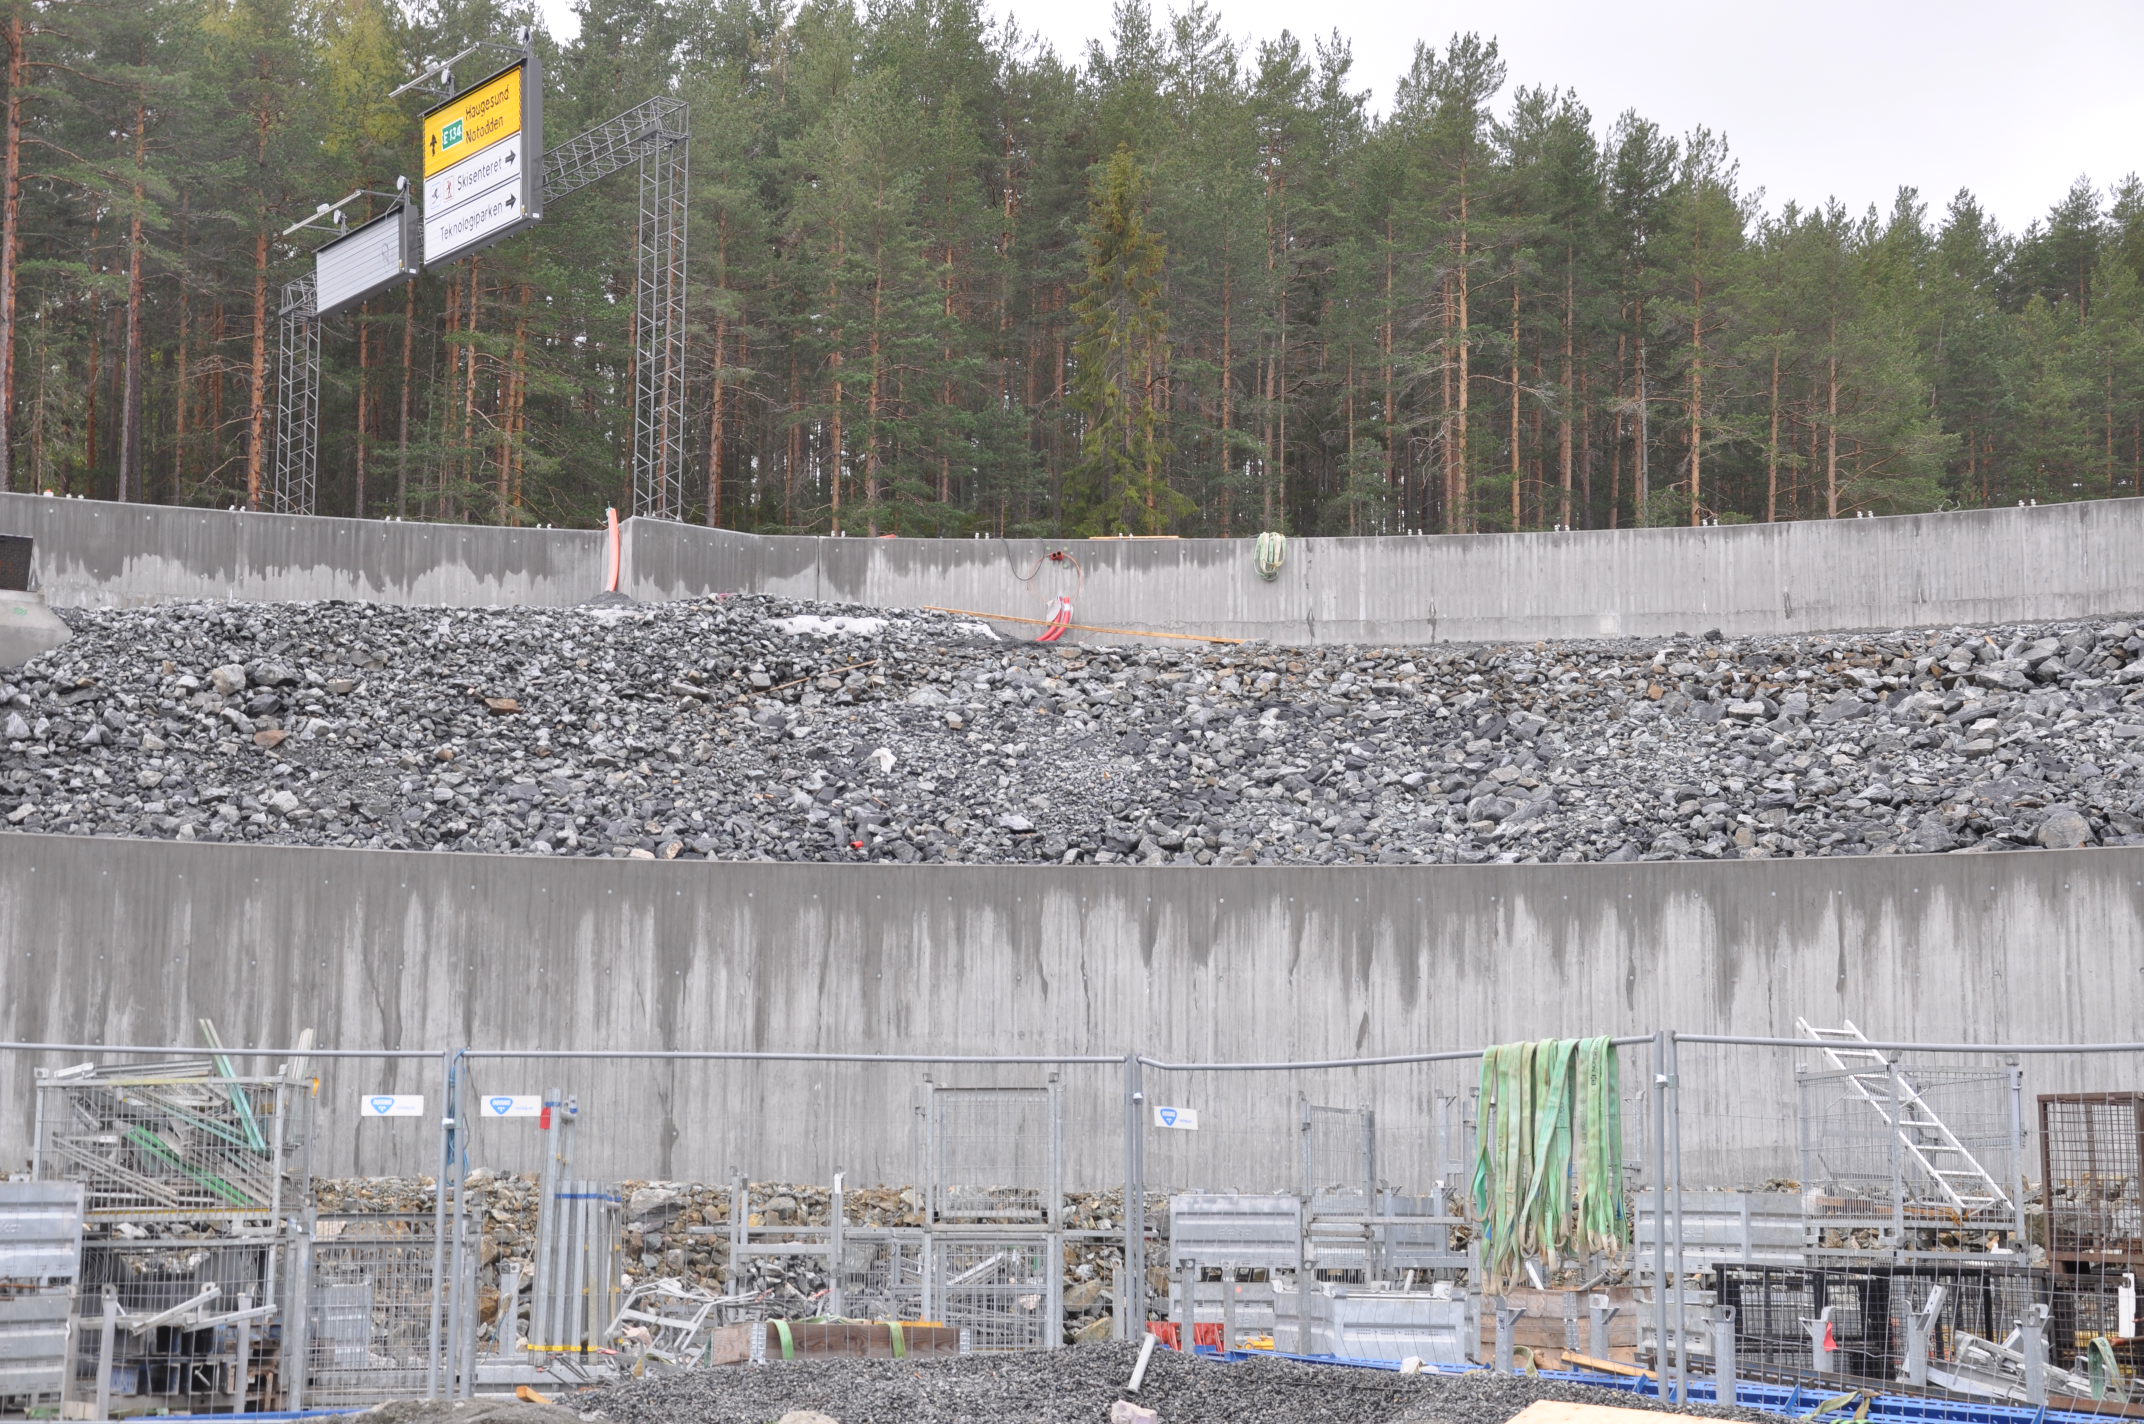 Lange støttemurer ved rundkjøringen bak renseanlegget i Sellikdalen. (Foto: Kjell Wold)